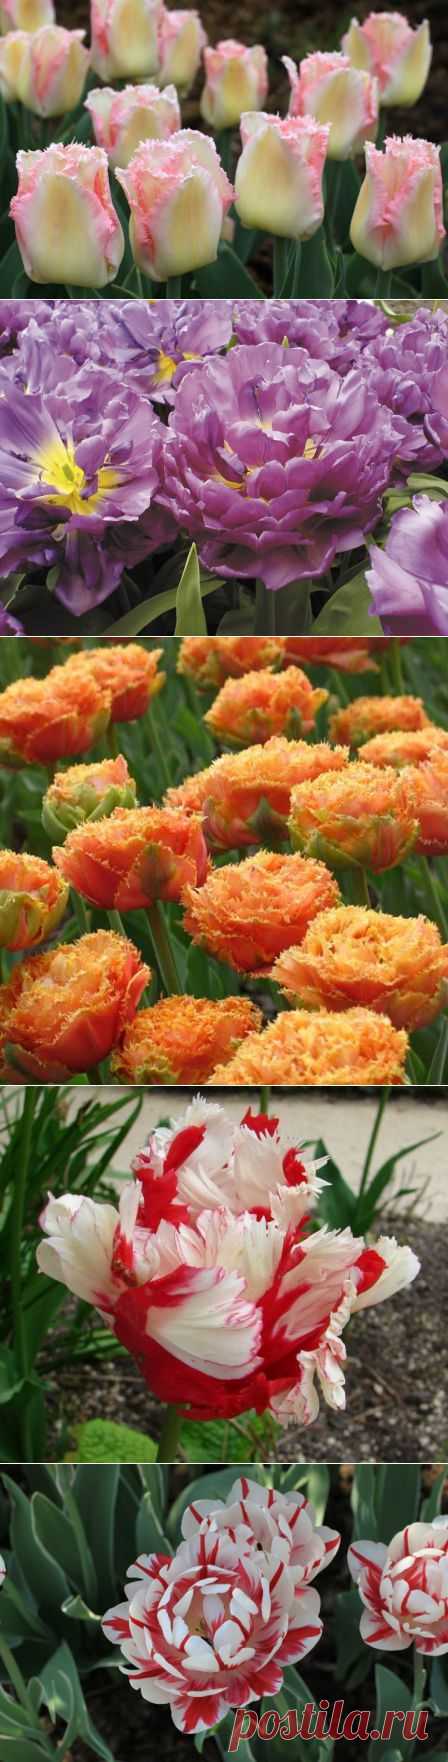 Тюльпаны: сорта и разновидности (ранно-, средно-, поздноцветущие; махровые, обычные), с чем посадить тюльпаны